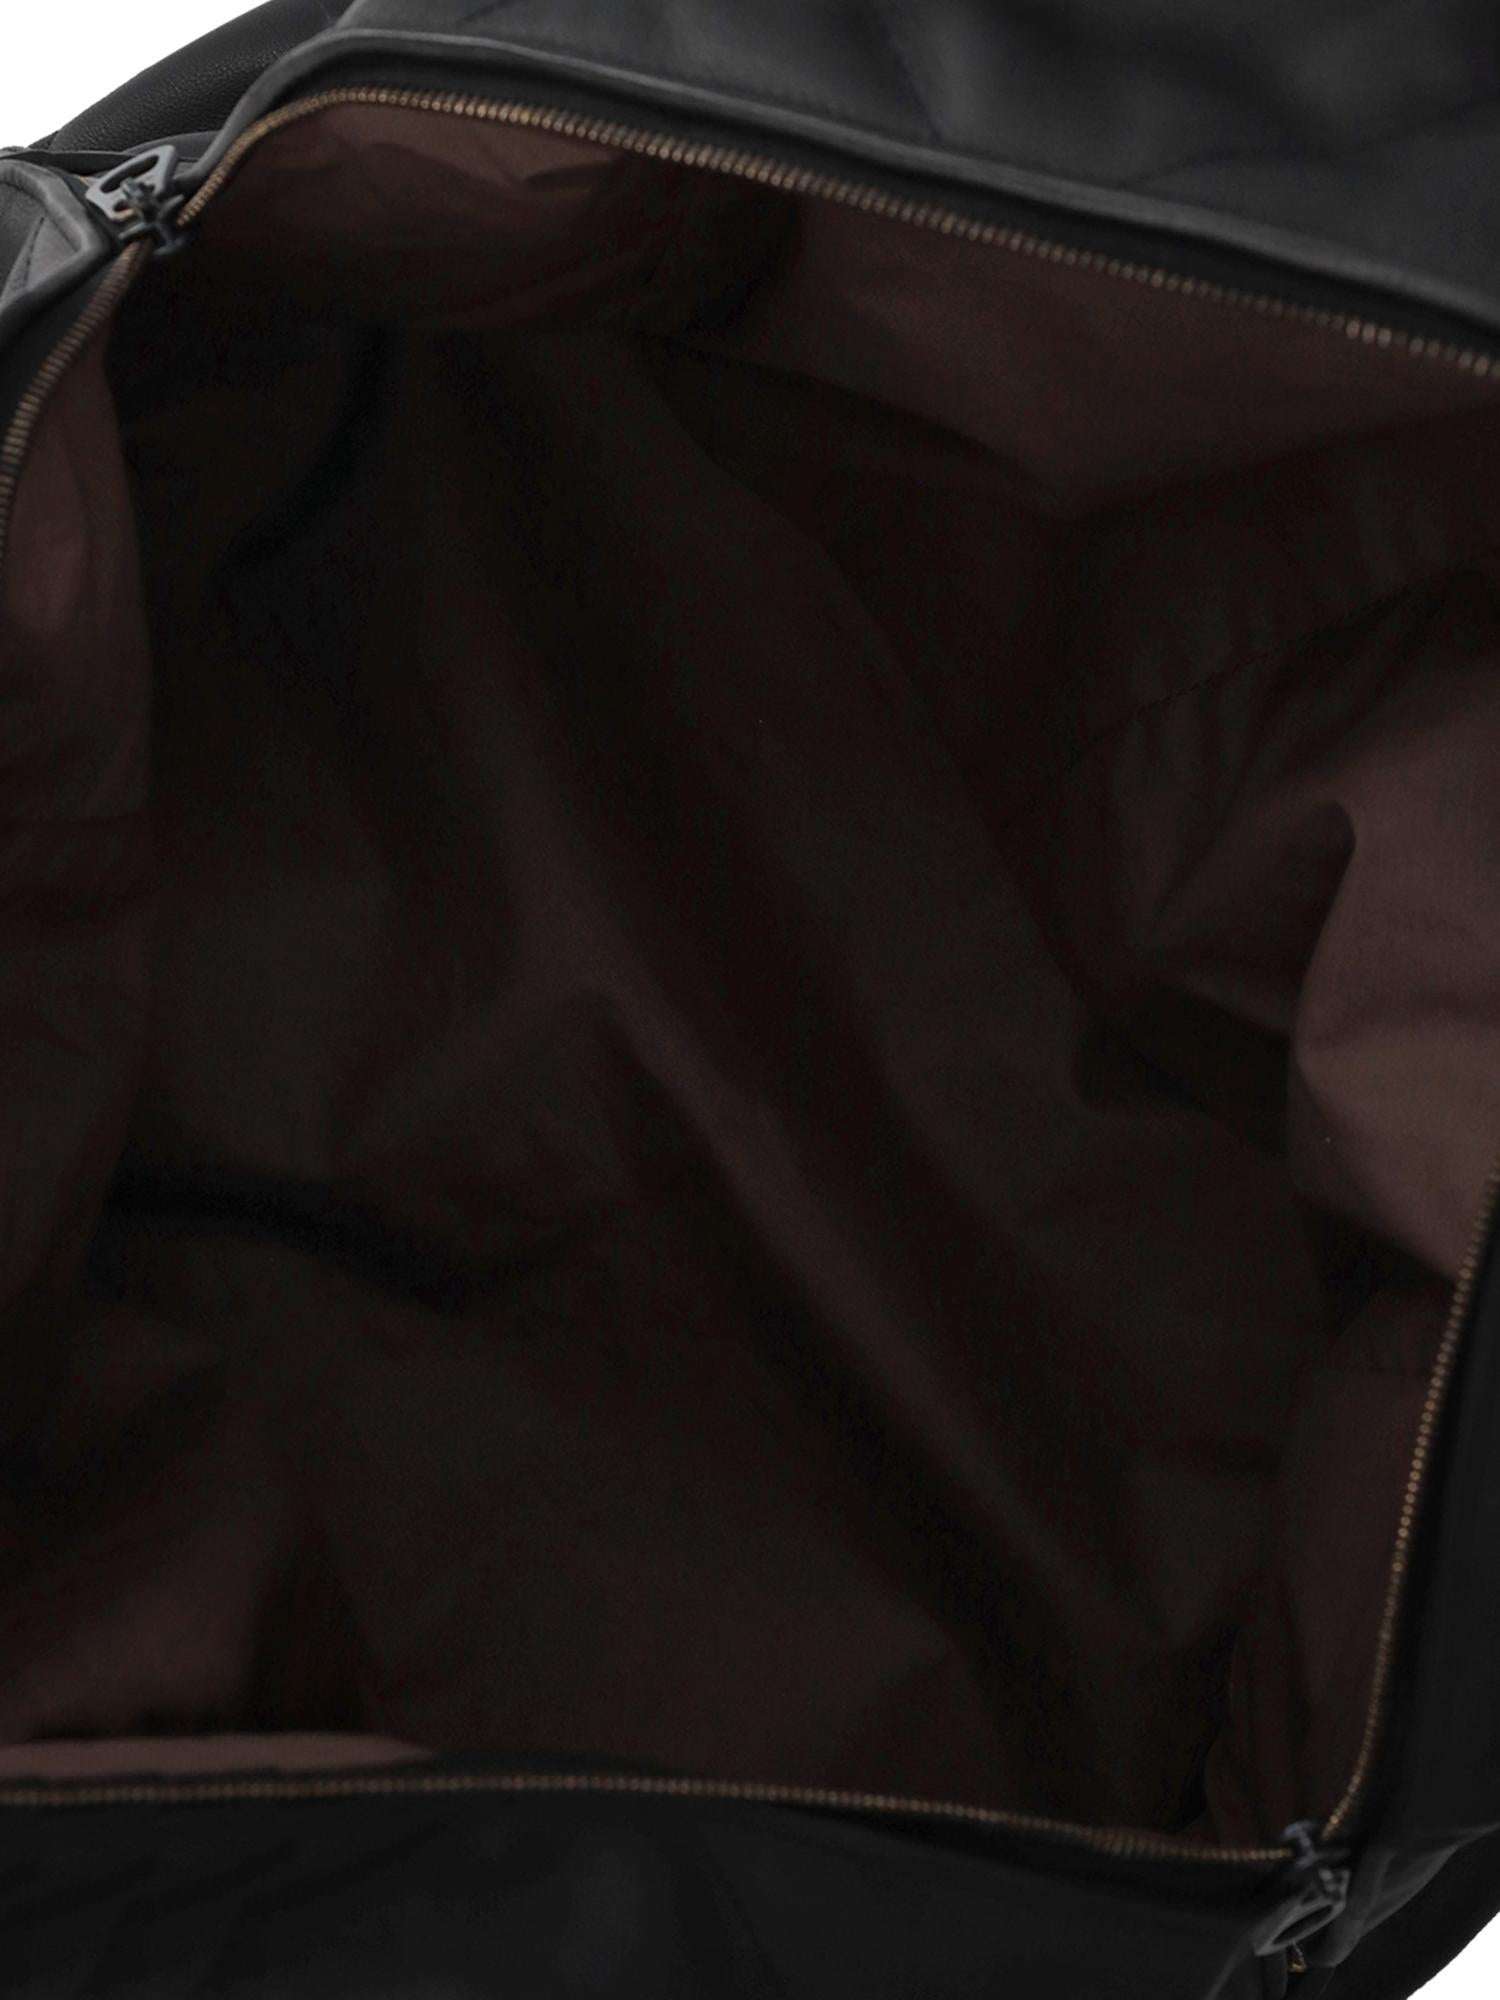 Bottega Veneta Women Travel bags Black Leather  For Sale 2